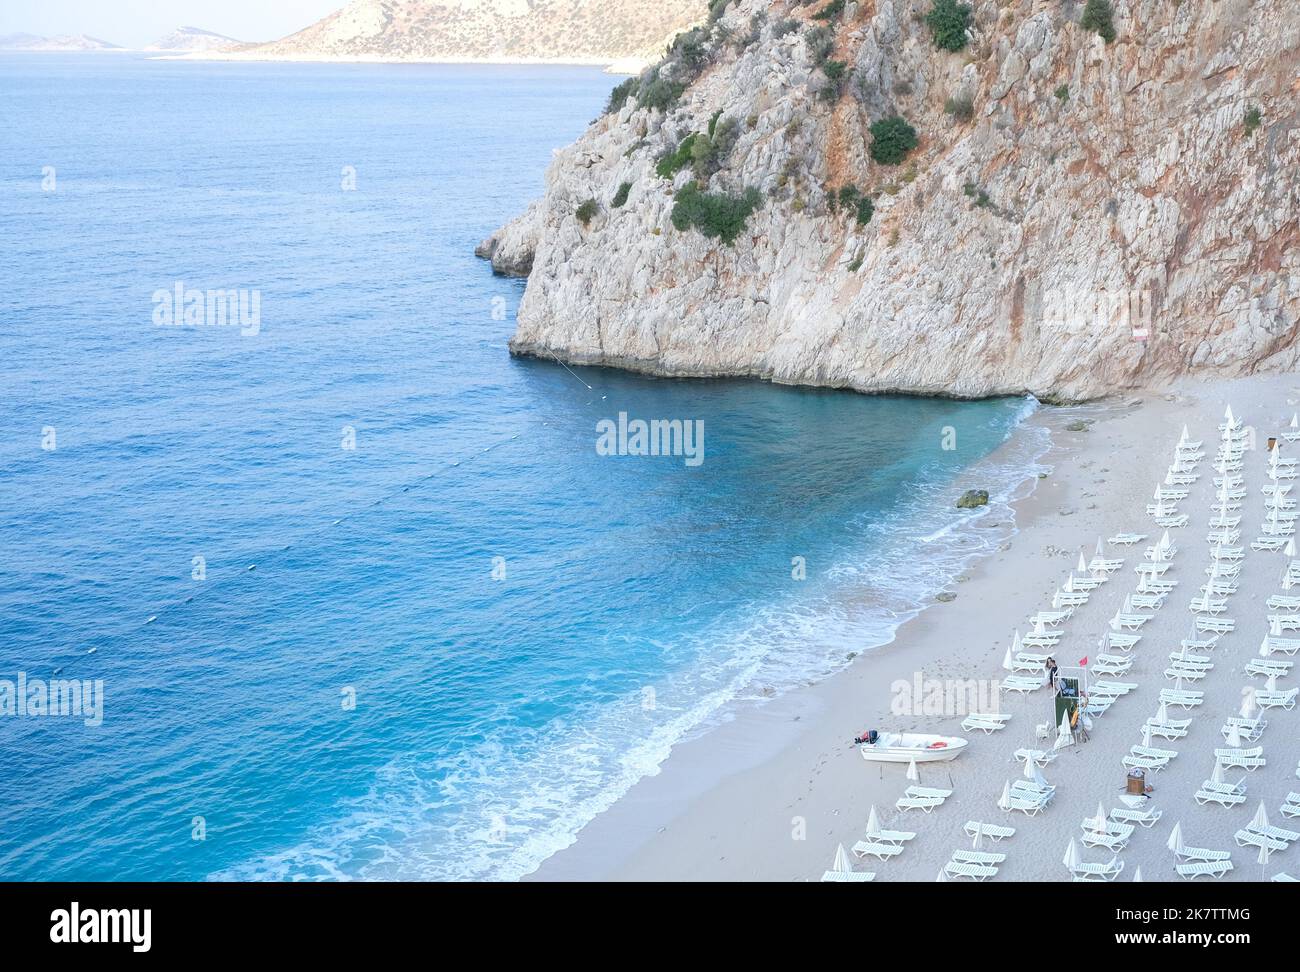 Plage vide de Kaputas à Kaş Antalya. Fond de plage vide avec mer, sable, lit de soleil et rochers. Une des plages les plus célèbres de Turquie. Personne à la plage. Banque D'Images